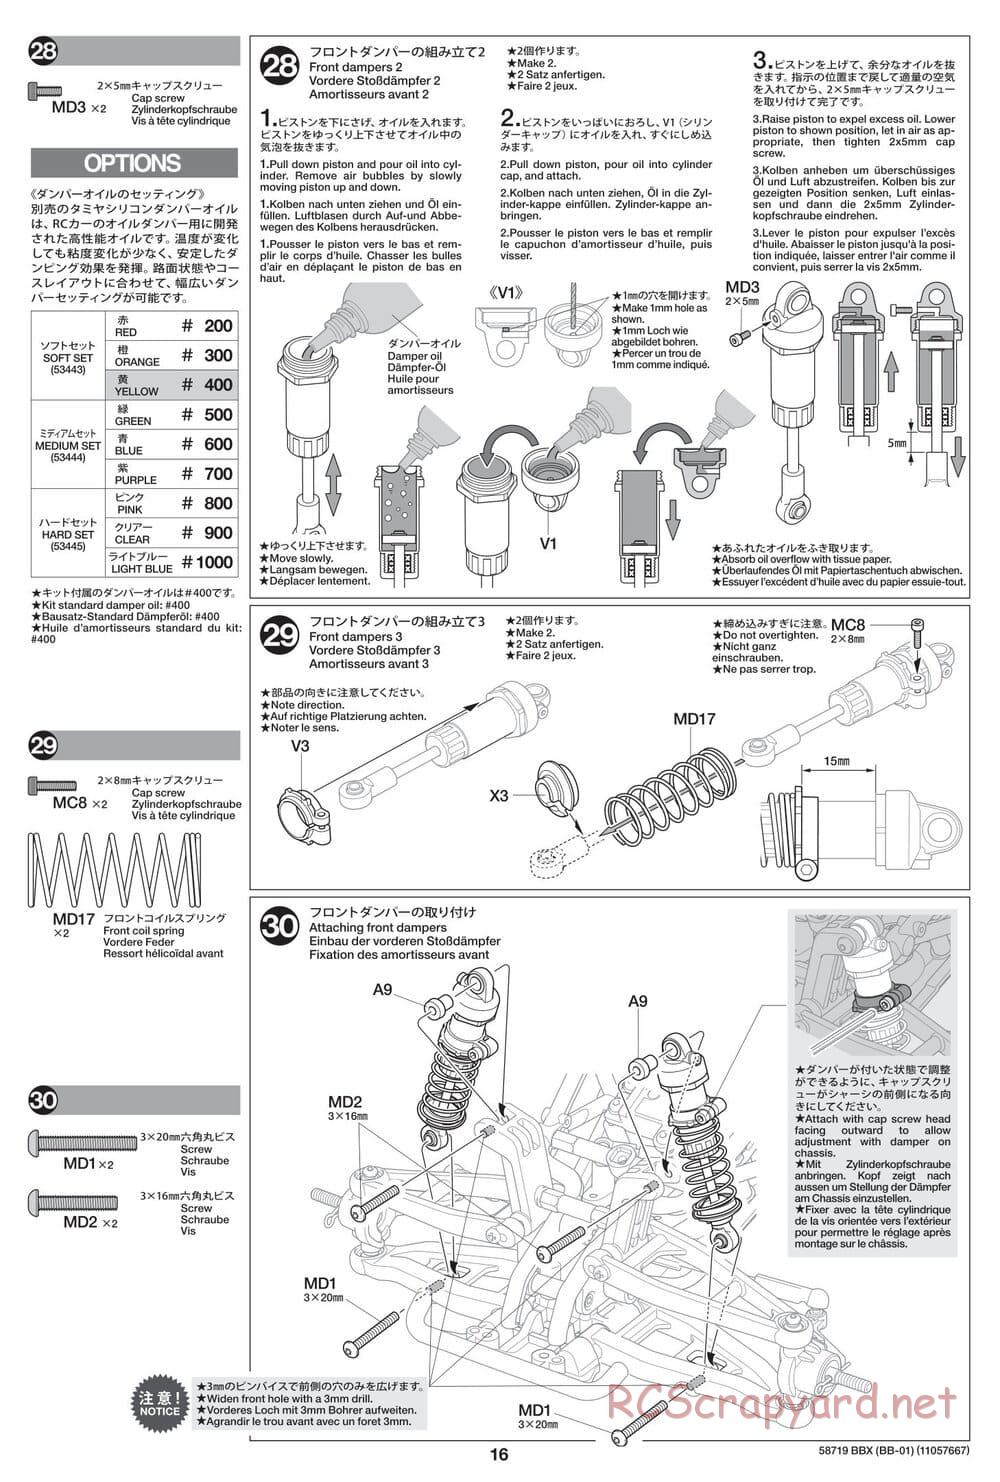 Tamiya - BBX - BB-01 Chassis - Manual - Page 16